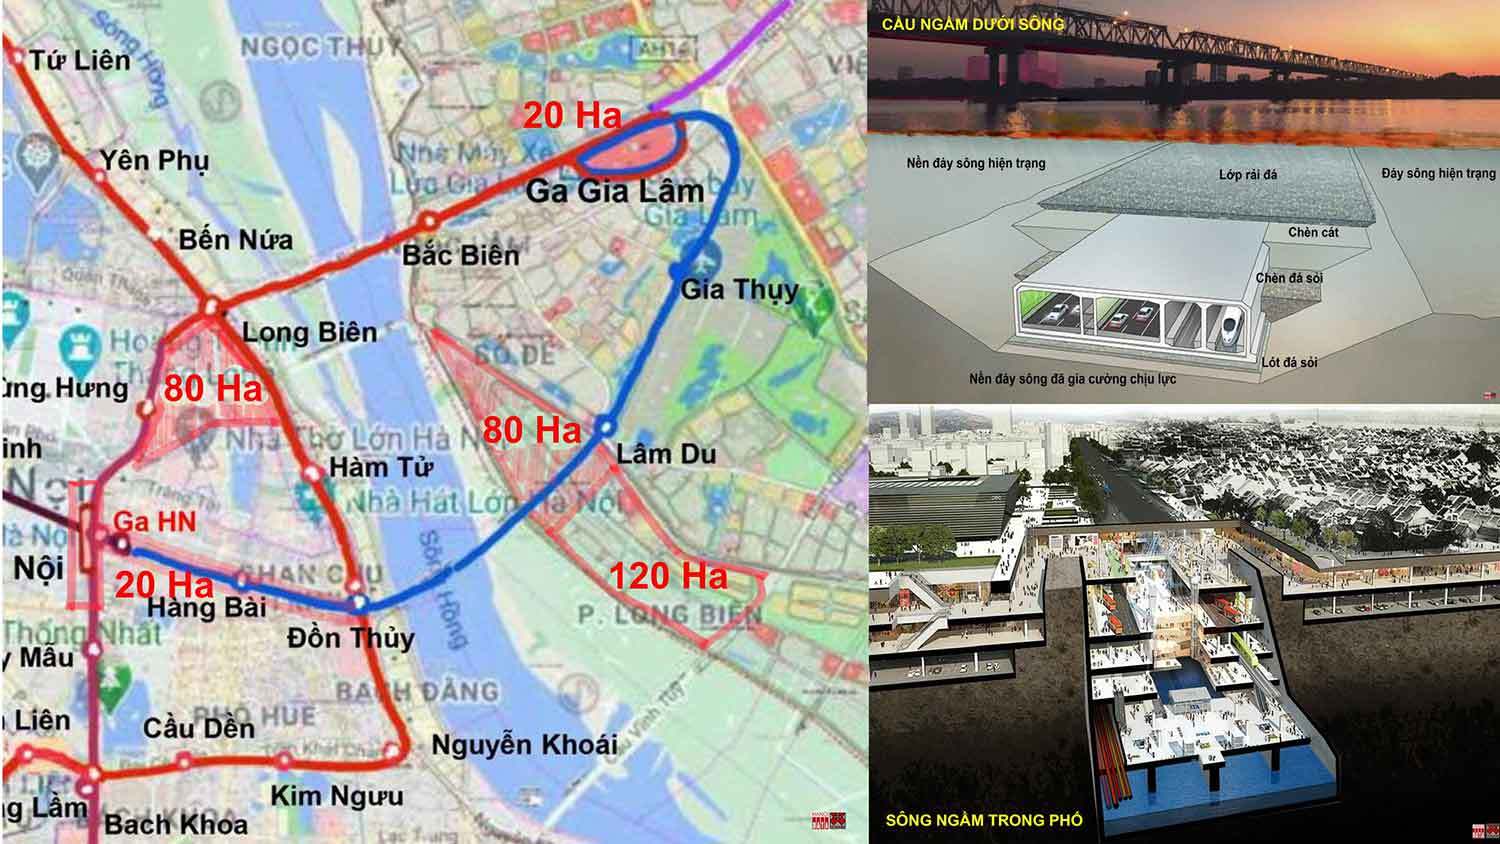 Đề xuất của City Solution: Quy hoạch tích hợp đa ngành "Cầu ngầm dưới sông/sông ngầm trong phố" và không gian phát triển đôi bờ sông Hồng